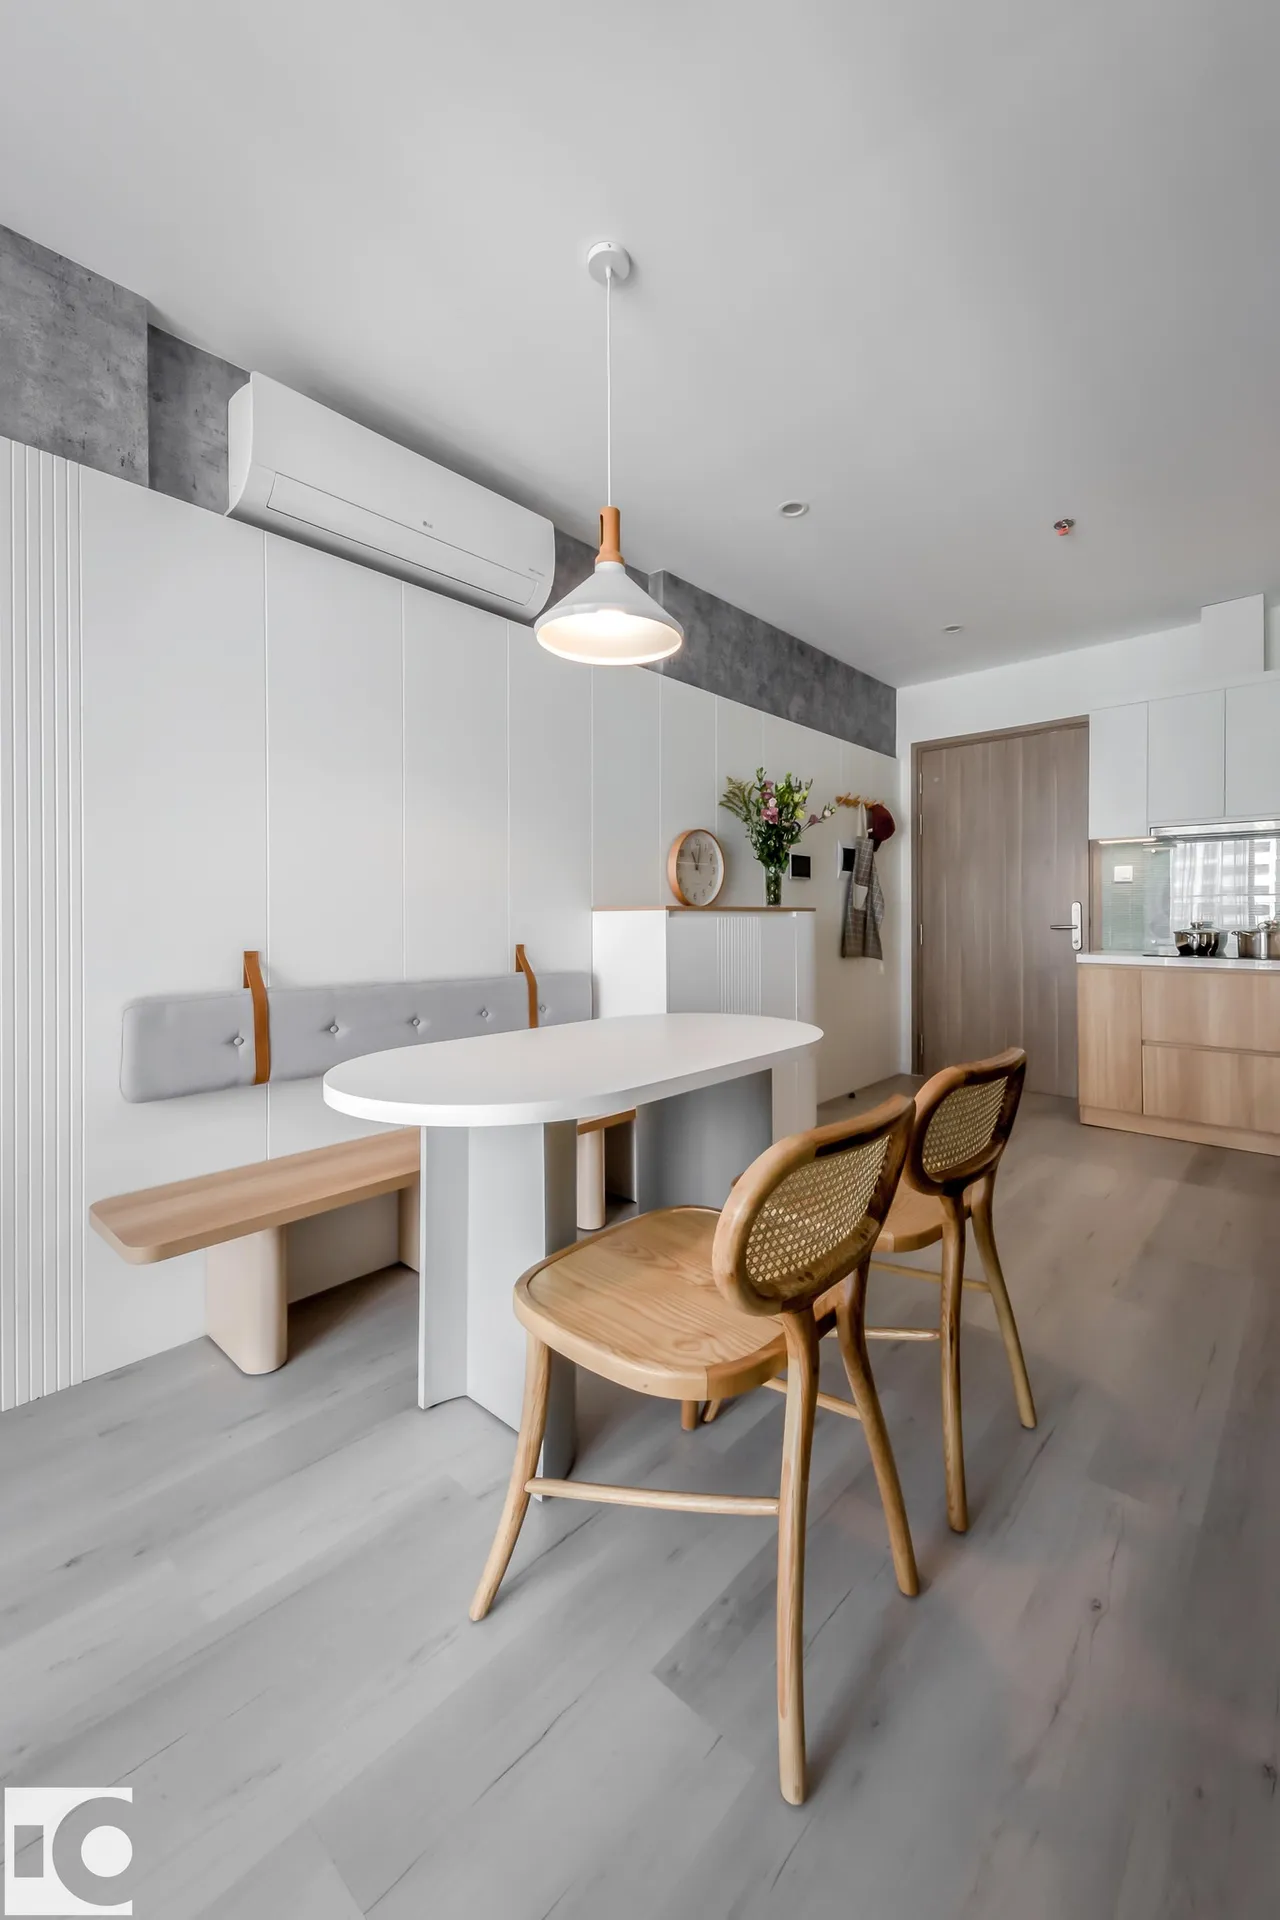 Hoàn thiện nội thất phòng ăn Căn hộ S107 Vinhomes Grand Park phong cách Tối giản Minimalist